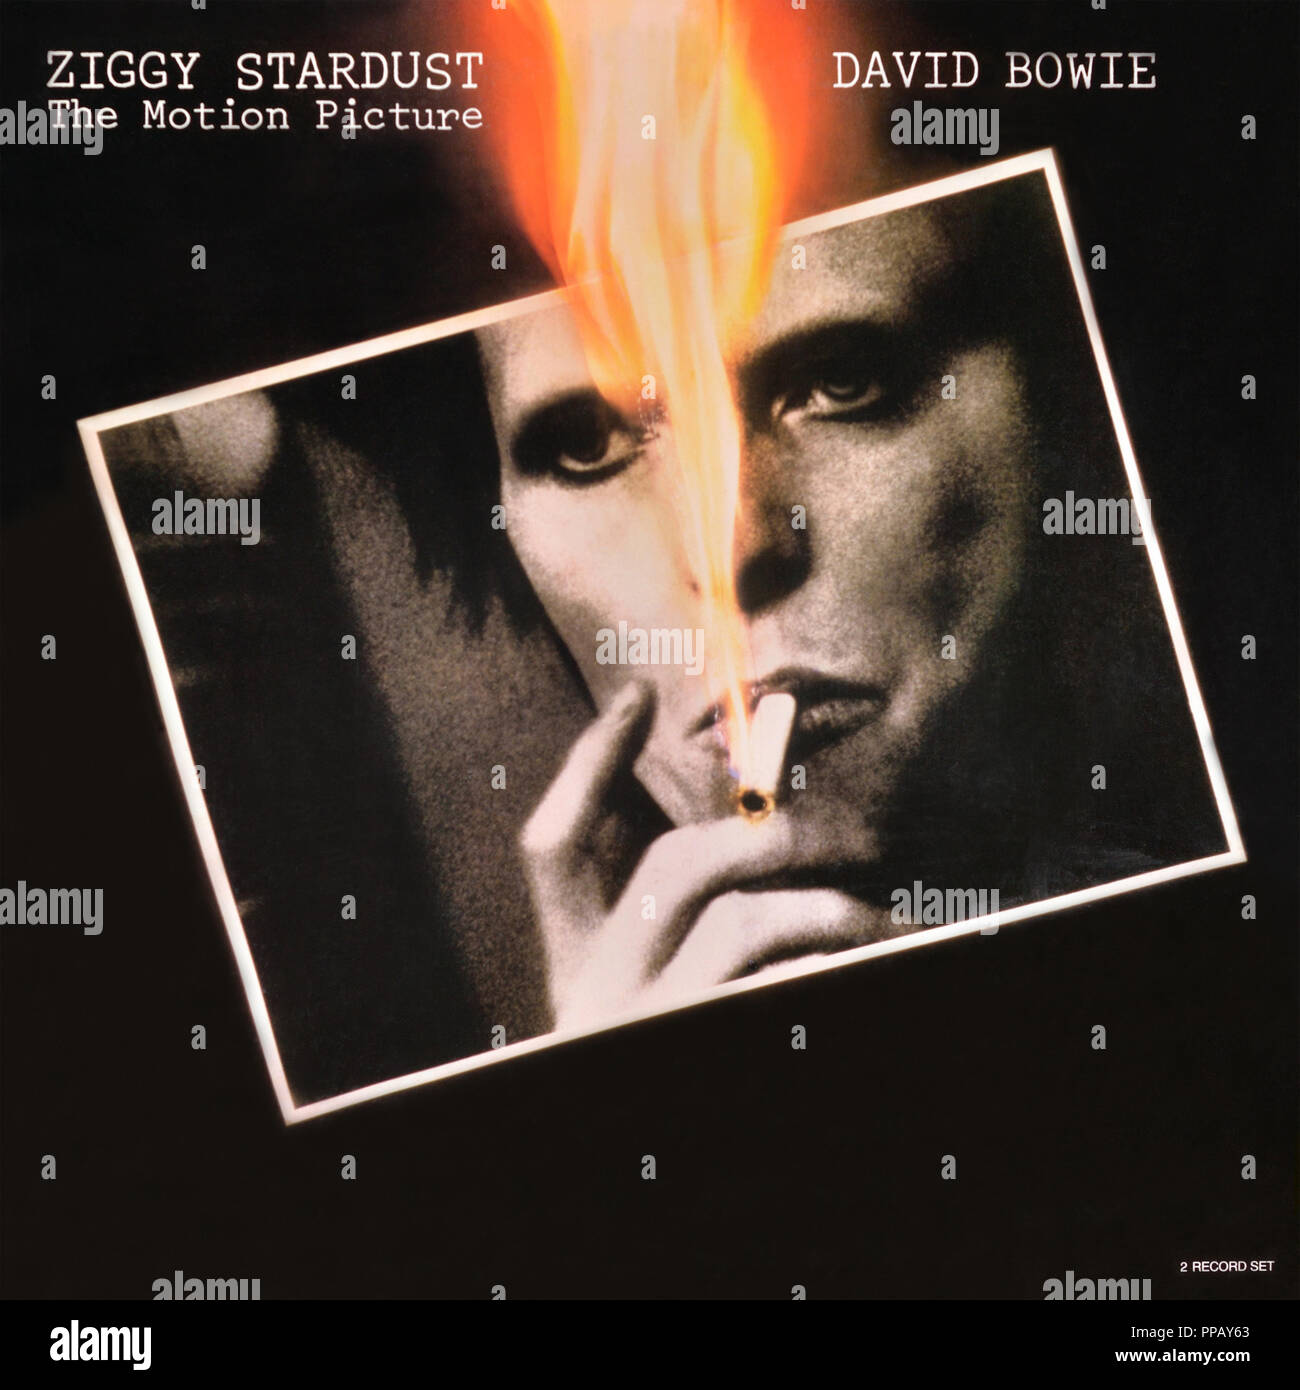 David Bowie - original vinyl album cover - Ziggy Sturdust the motion picture - 1983 Stock Photo